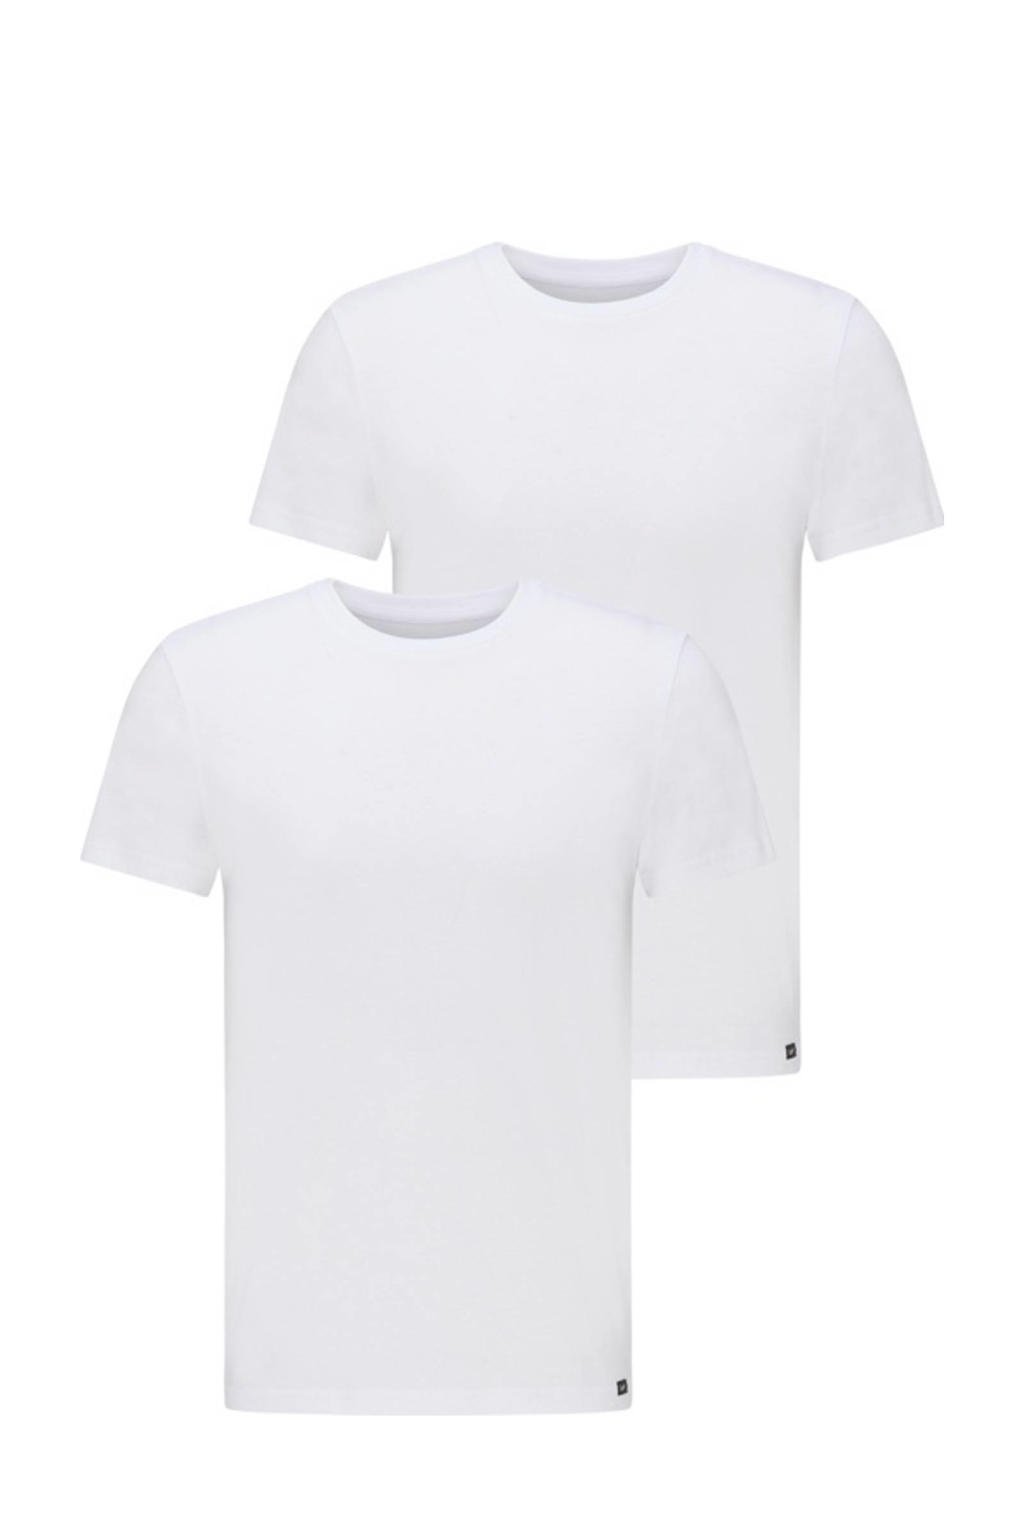 Set van 2 witte heren Lee T-shirt van biologisch katoen met korte mouwen en ronde hals